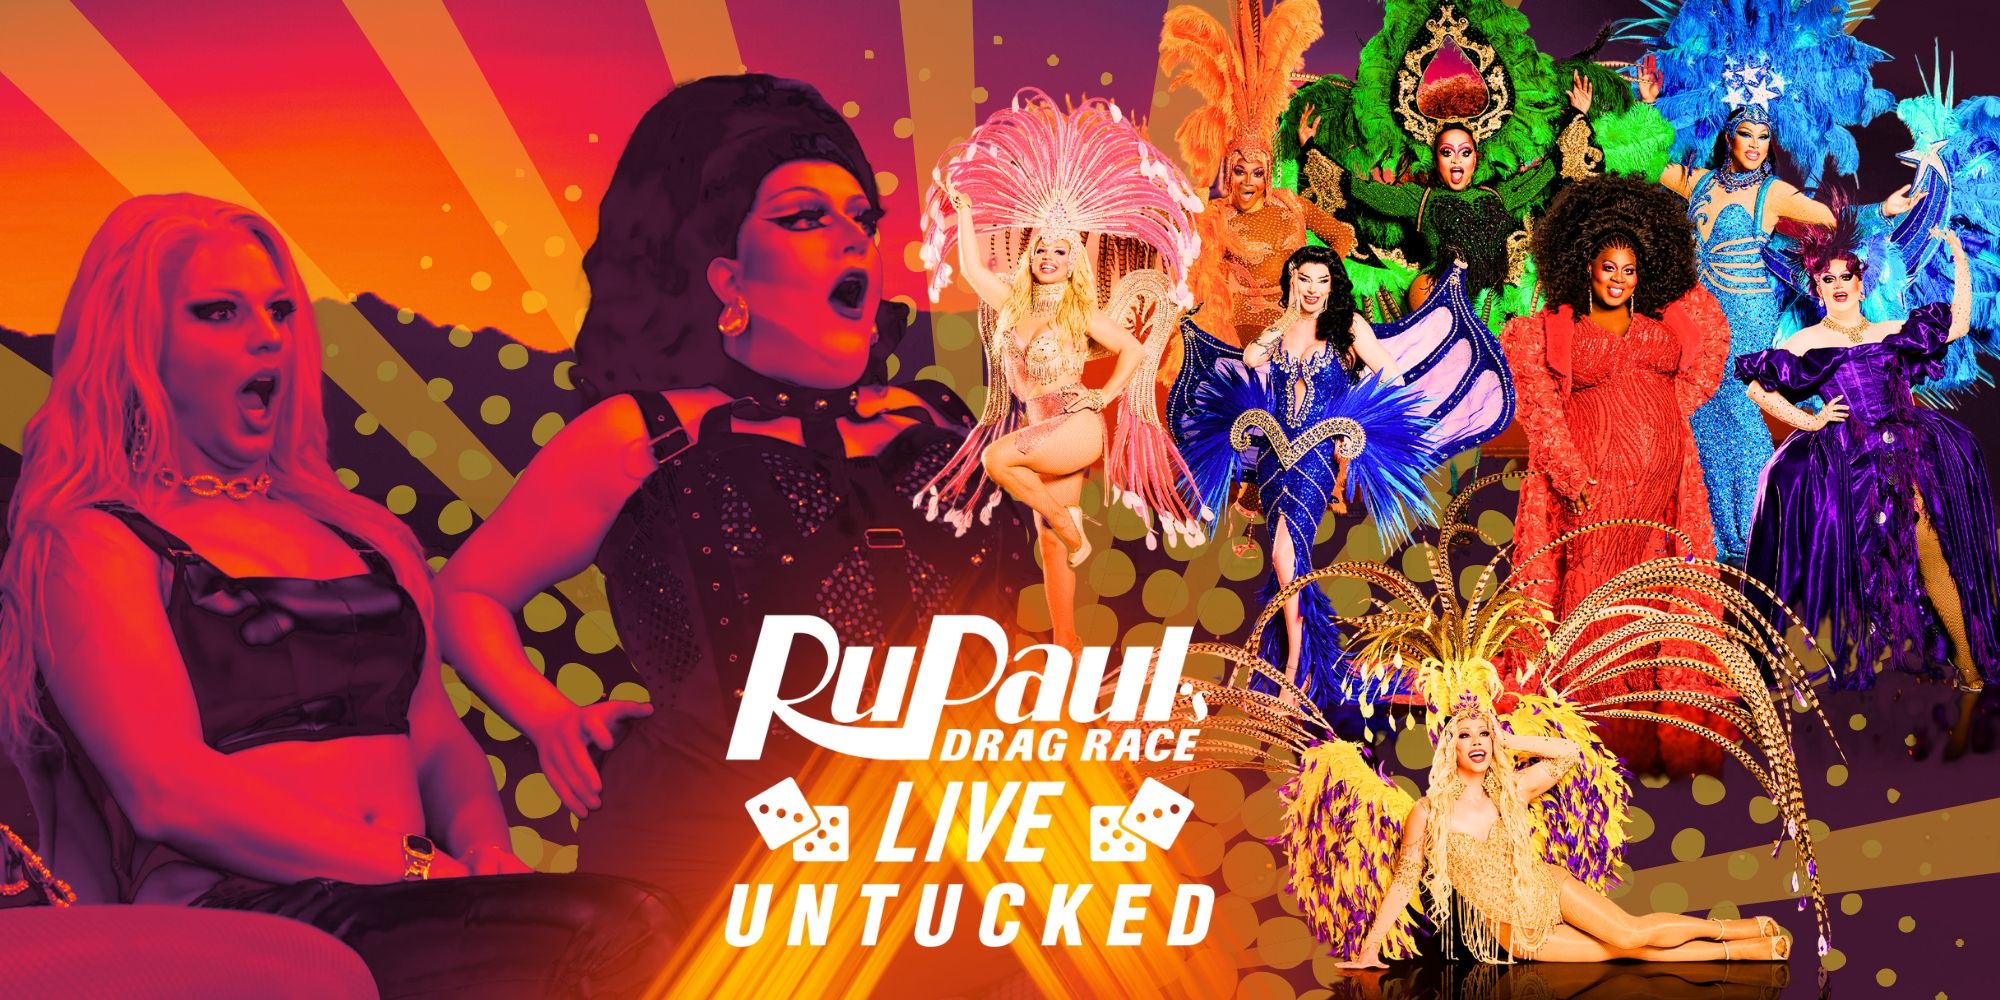 El tráiler untucked de RuPaul's Drag Race Live revela que los concursantes anteriores crearon una tonelada de drama en Las Vegas